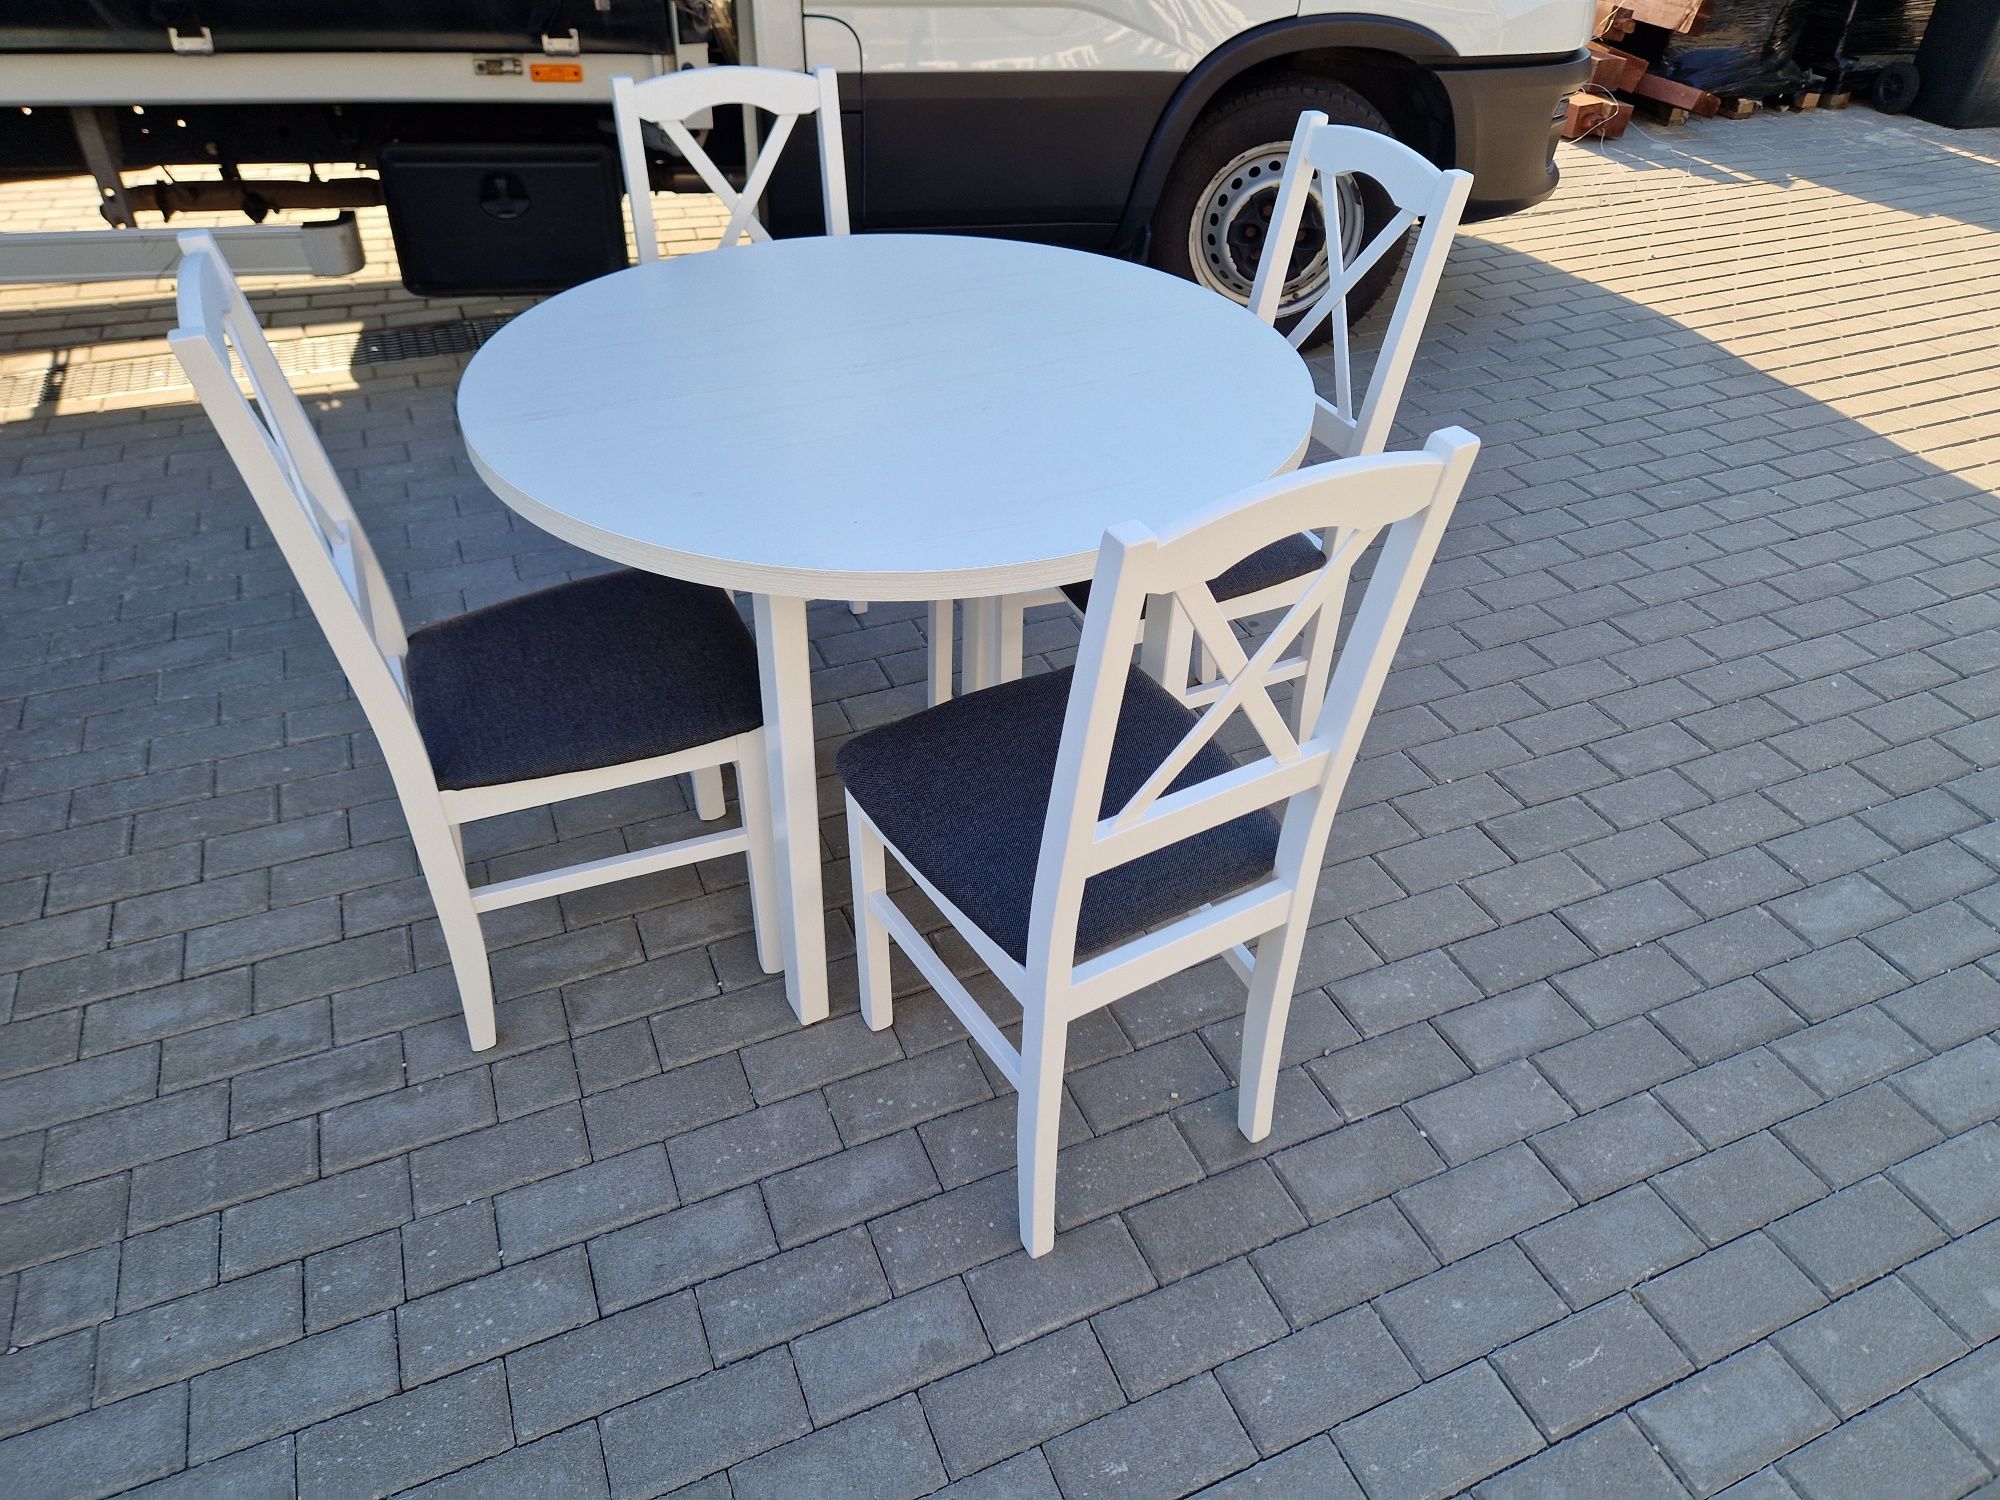 Nowe: Stół okrągły + 4 krzesła , biały + grafit ( krzyż )